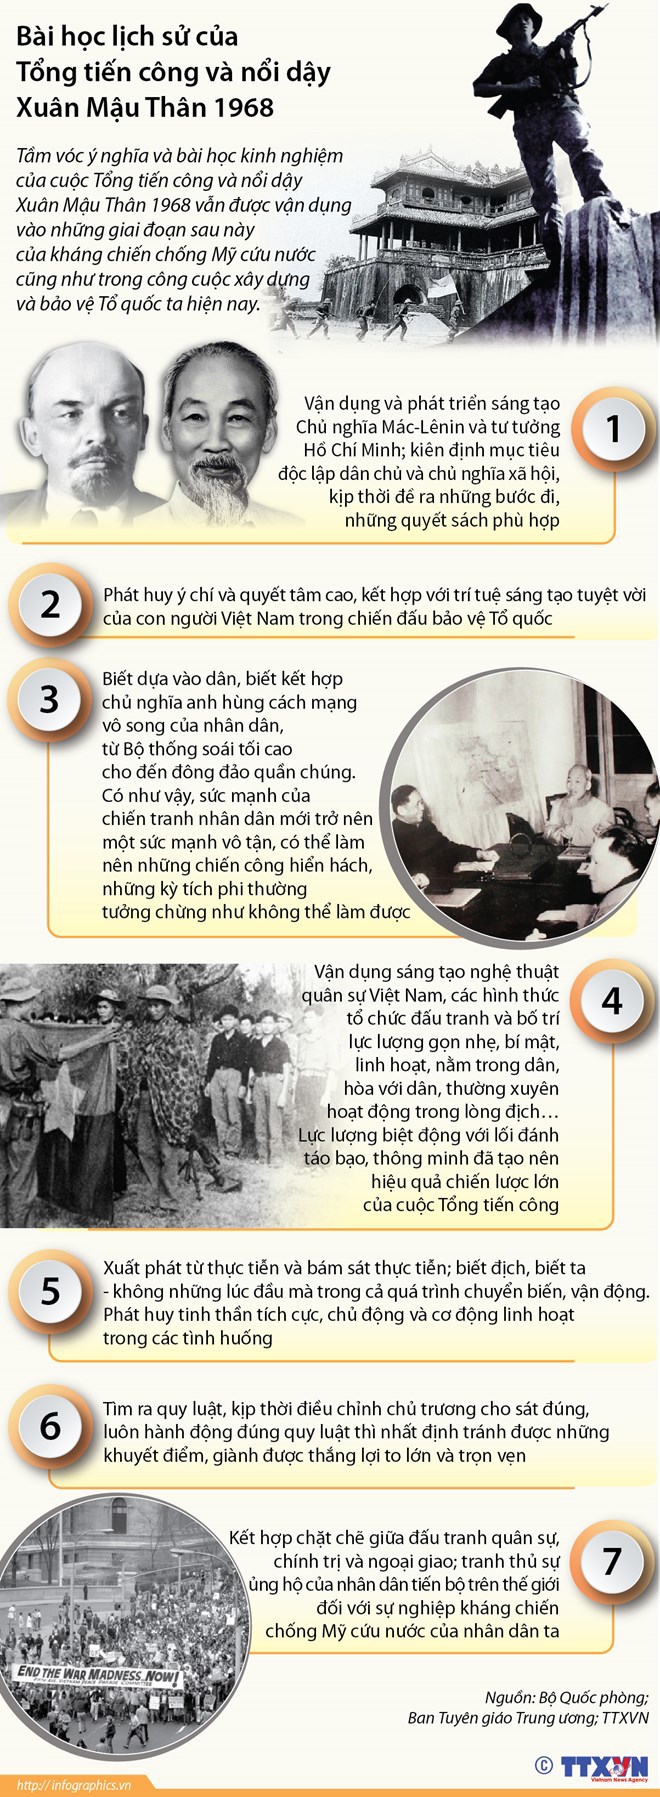 [Infographics] Bài học lịch sử của Tổng tiến công Xuân Mậu Thân 1968 - Ảnh 1